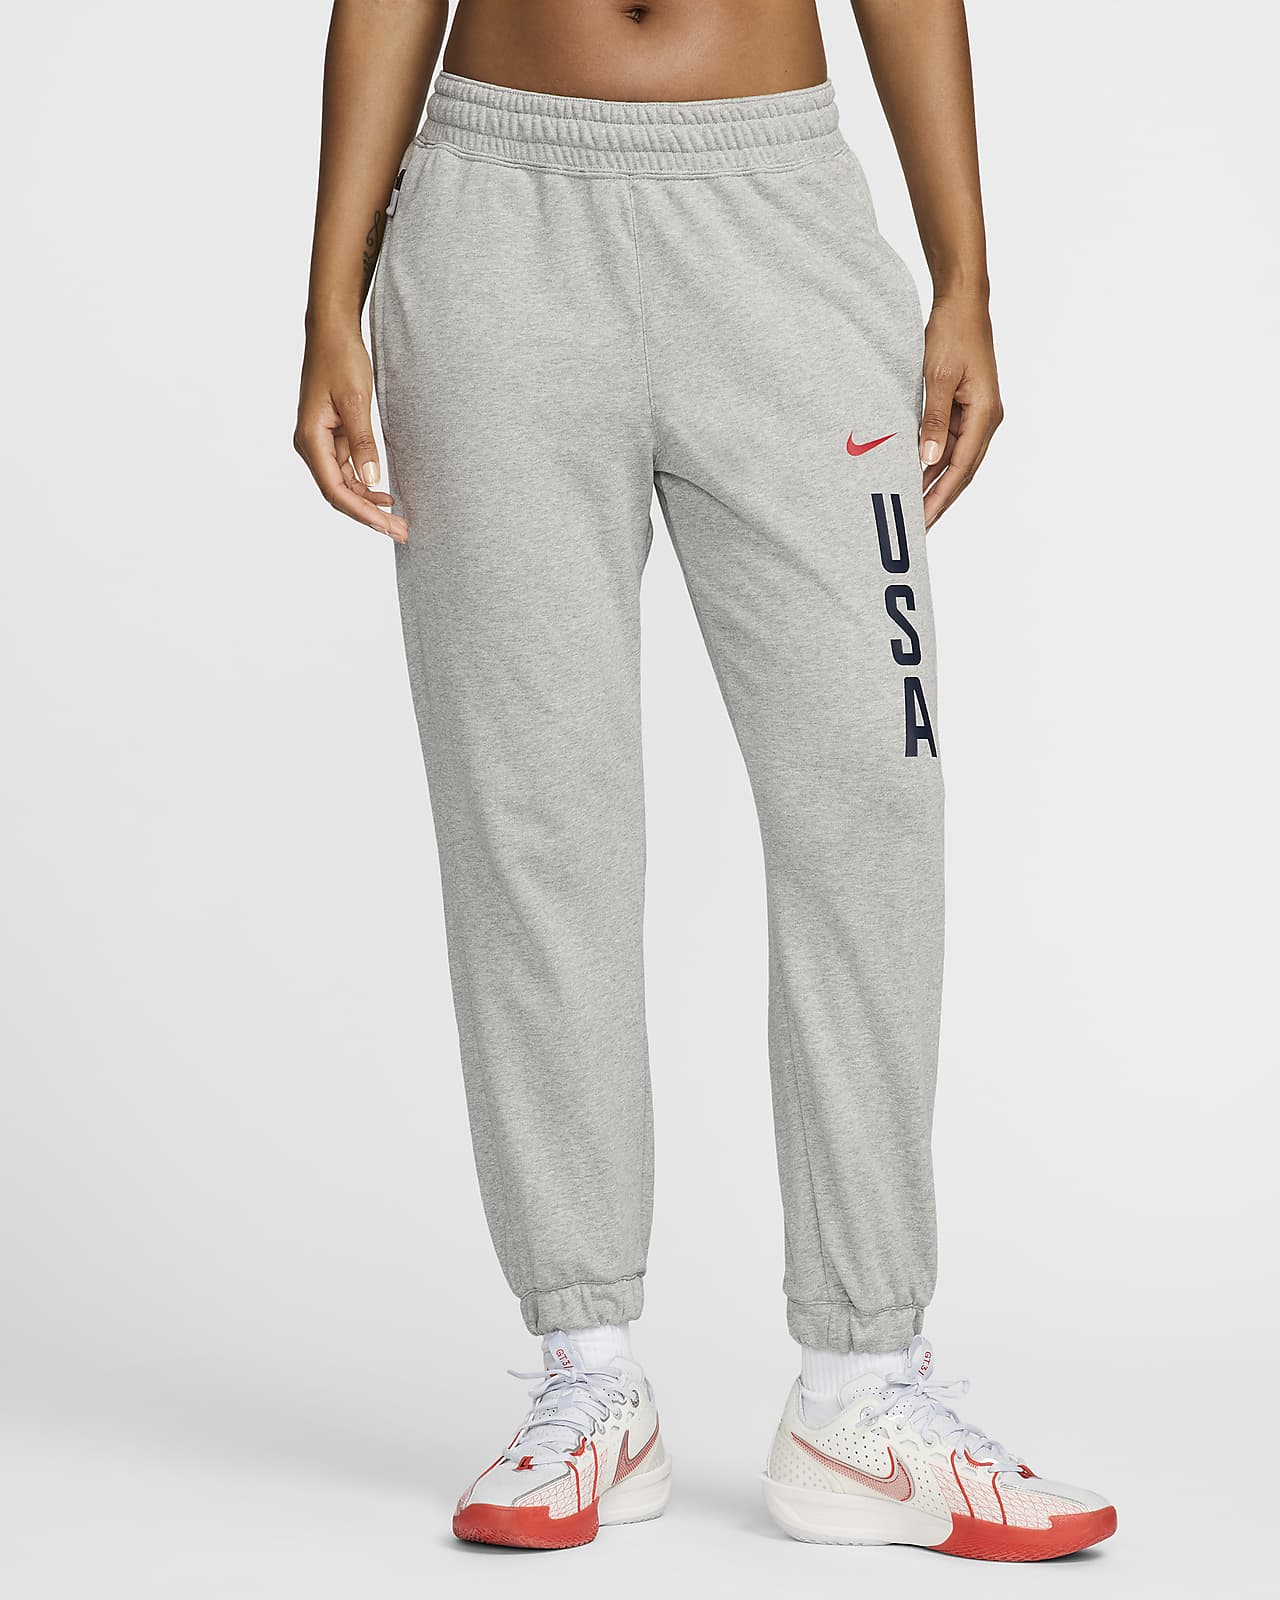 USA Practice Women's Nike Basketball Fleece Pant